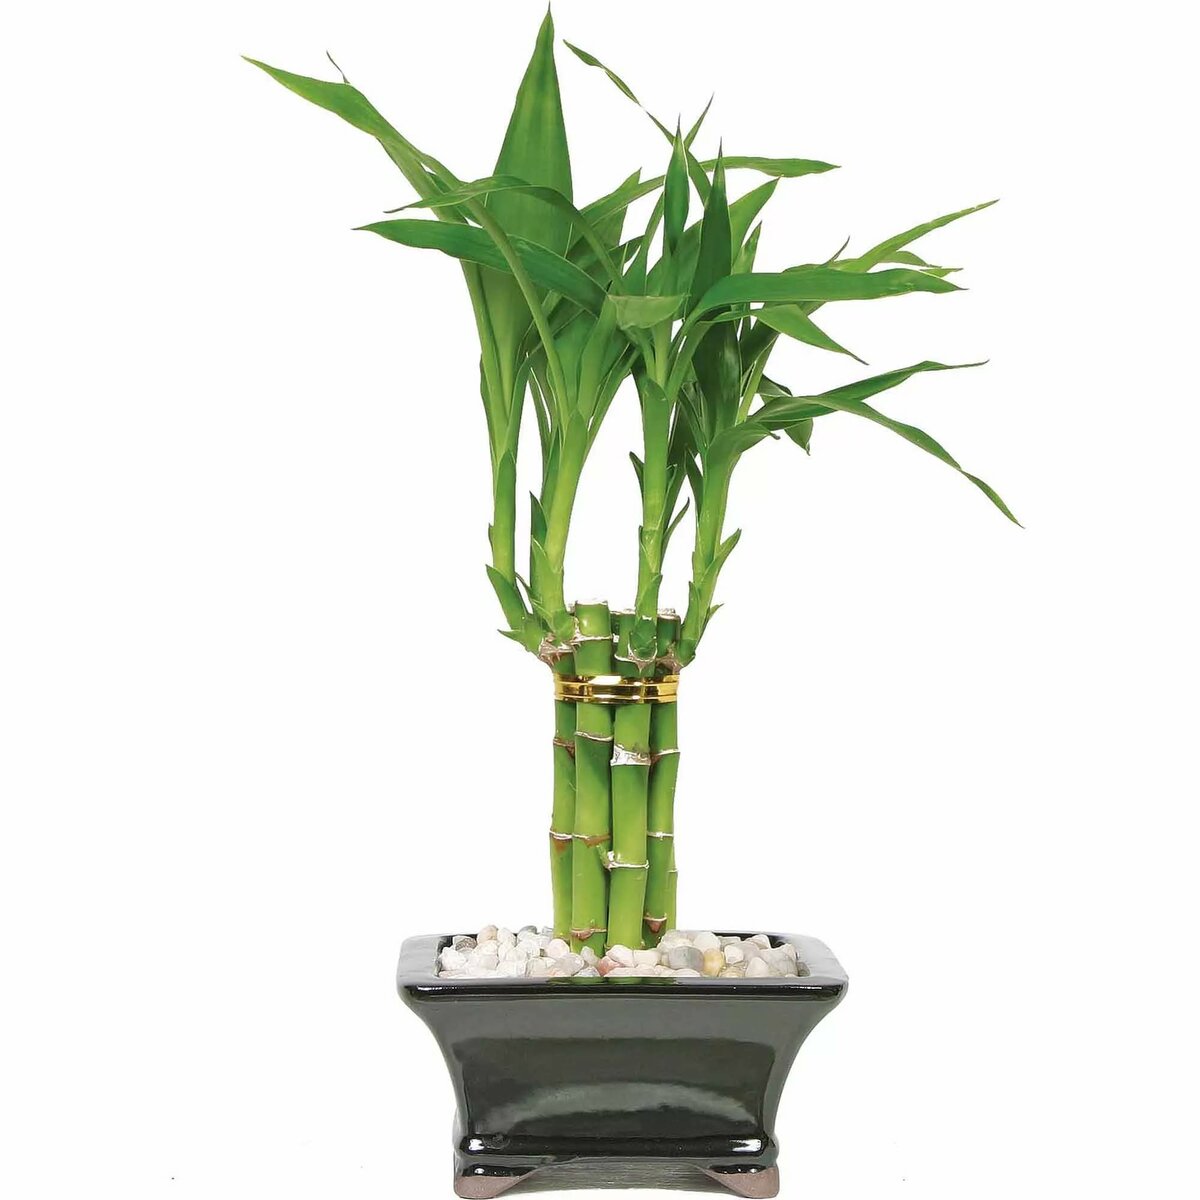 Драцена сандера: уход за растением в домашних условиях, фото